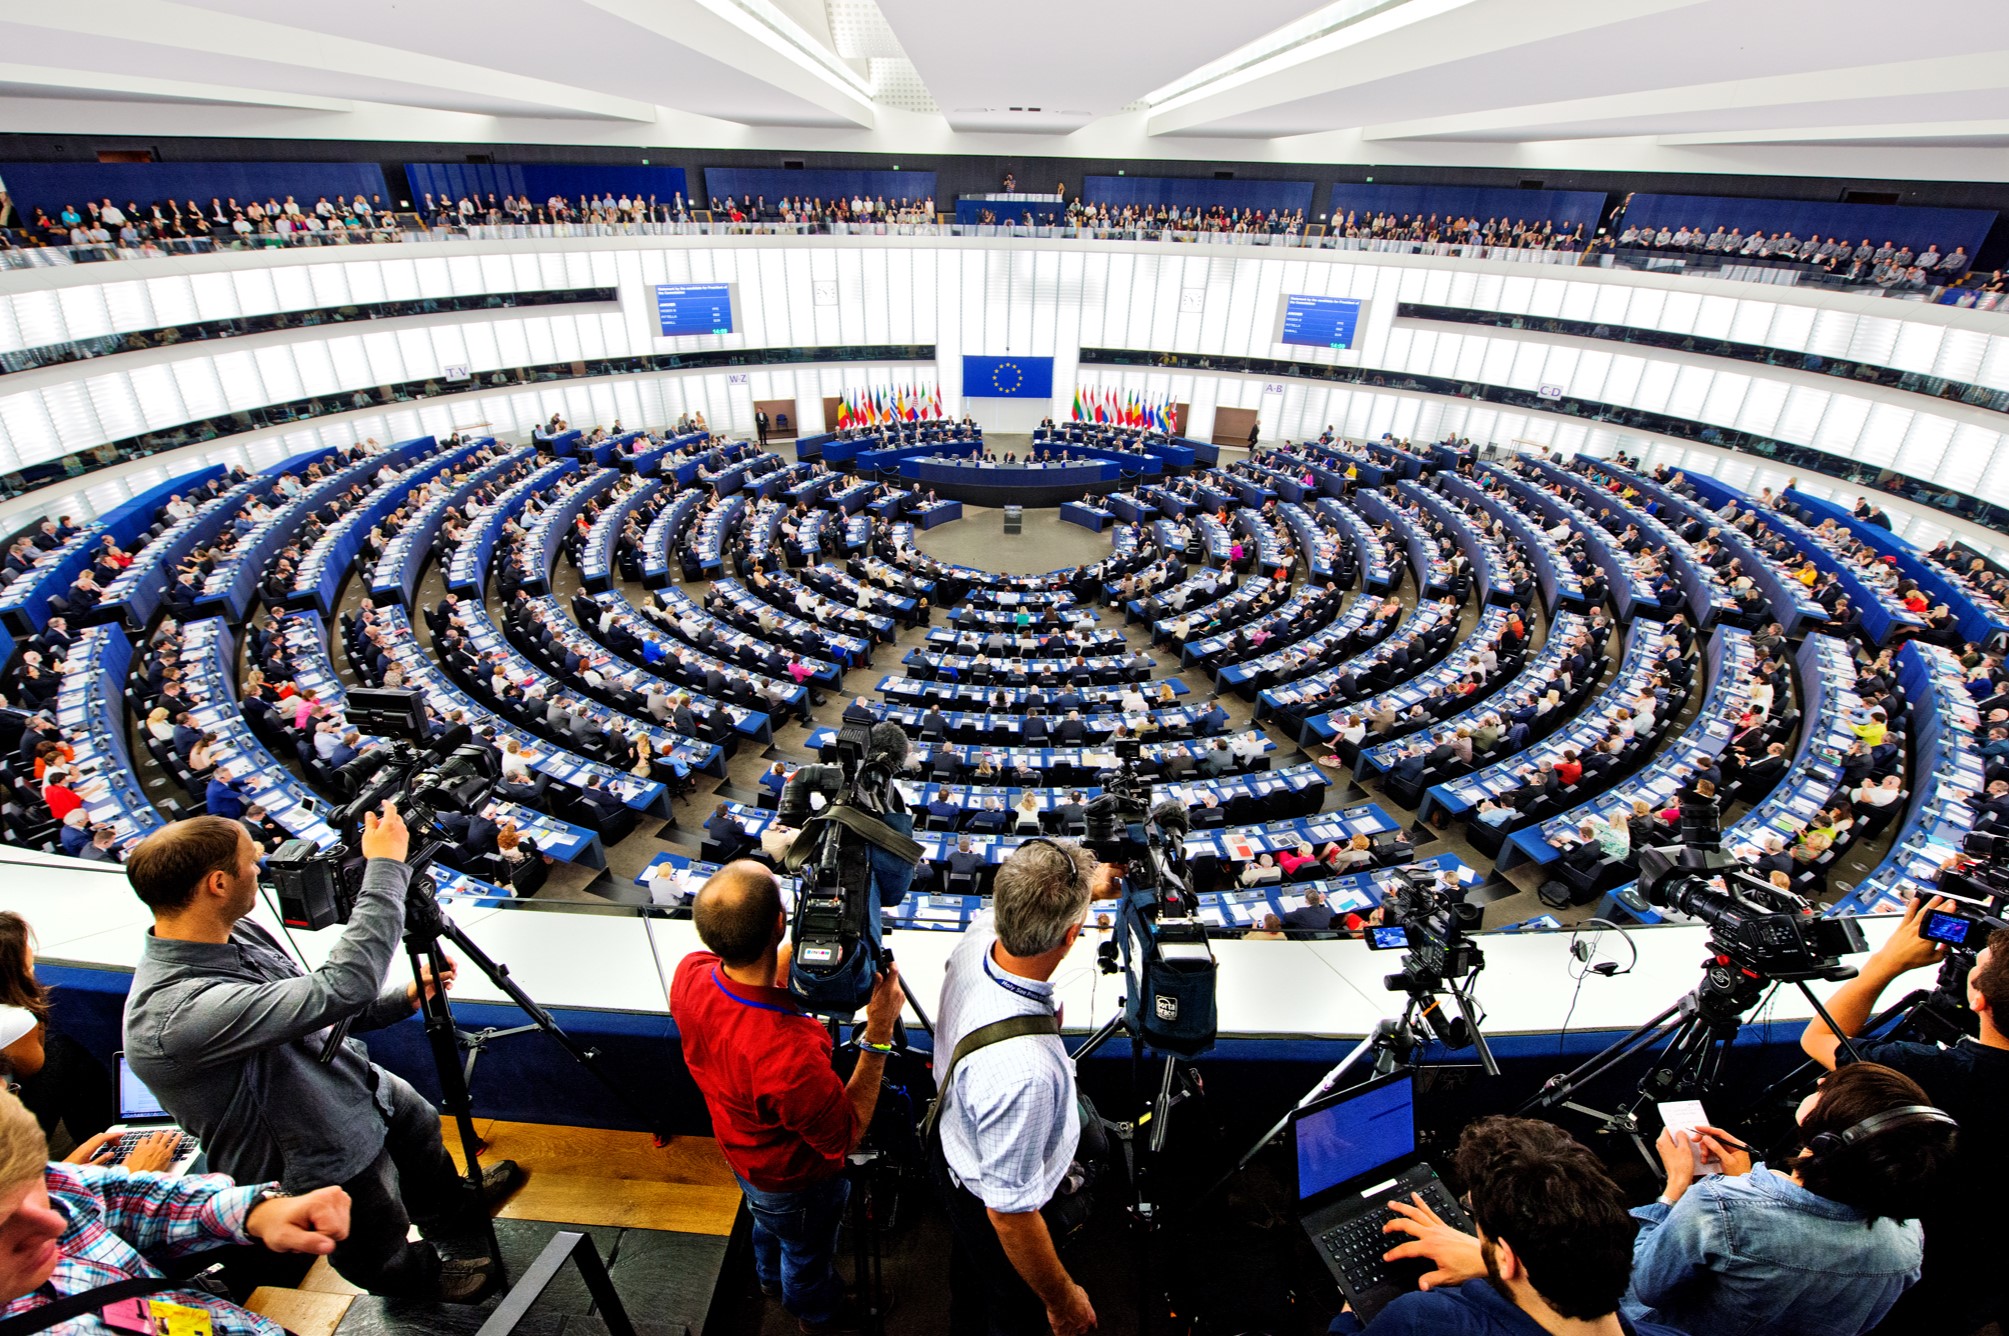 Bijeenkomst van het Europees Parlement voor het aanstellen van een nieuwe president van de Europese Commissie. Brussel, 15 juli 2014. European Parliament via Flickr.